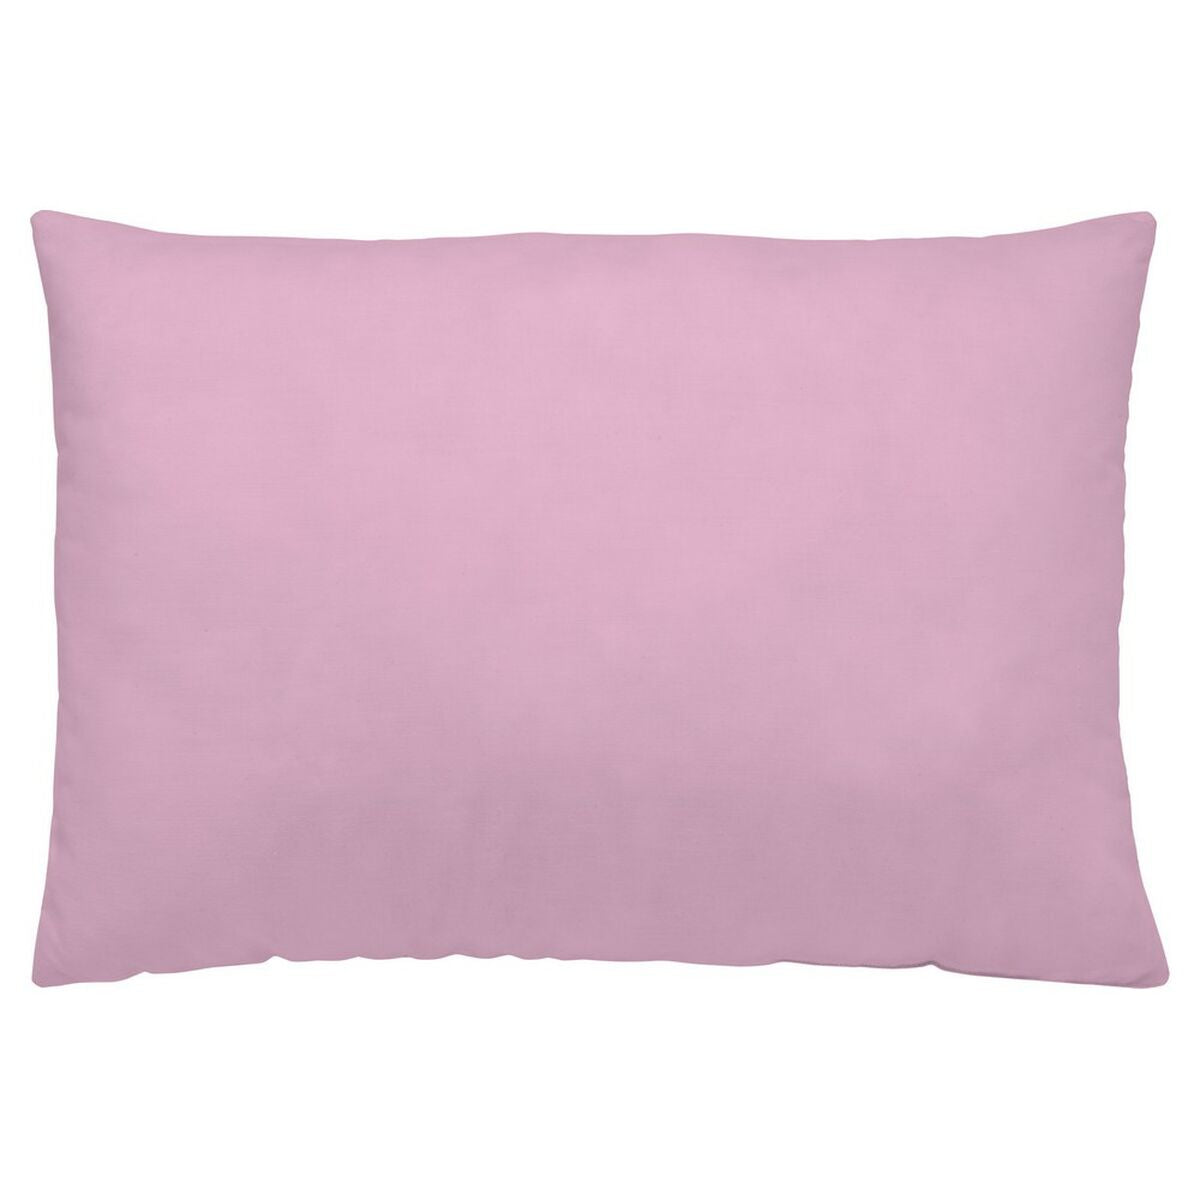 Pillowcase Naturals Light Pink (45 x 155 cm)